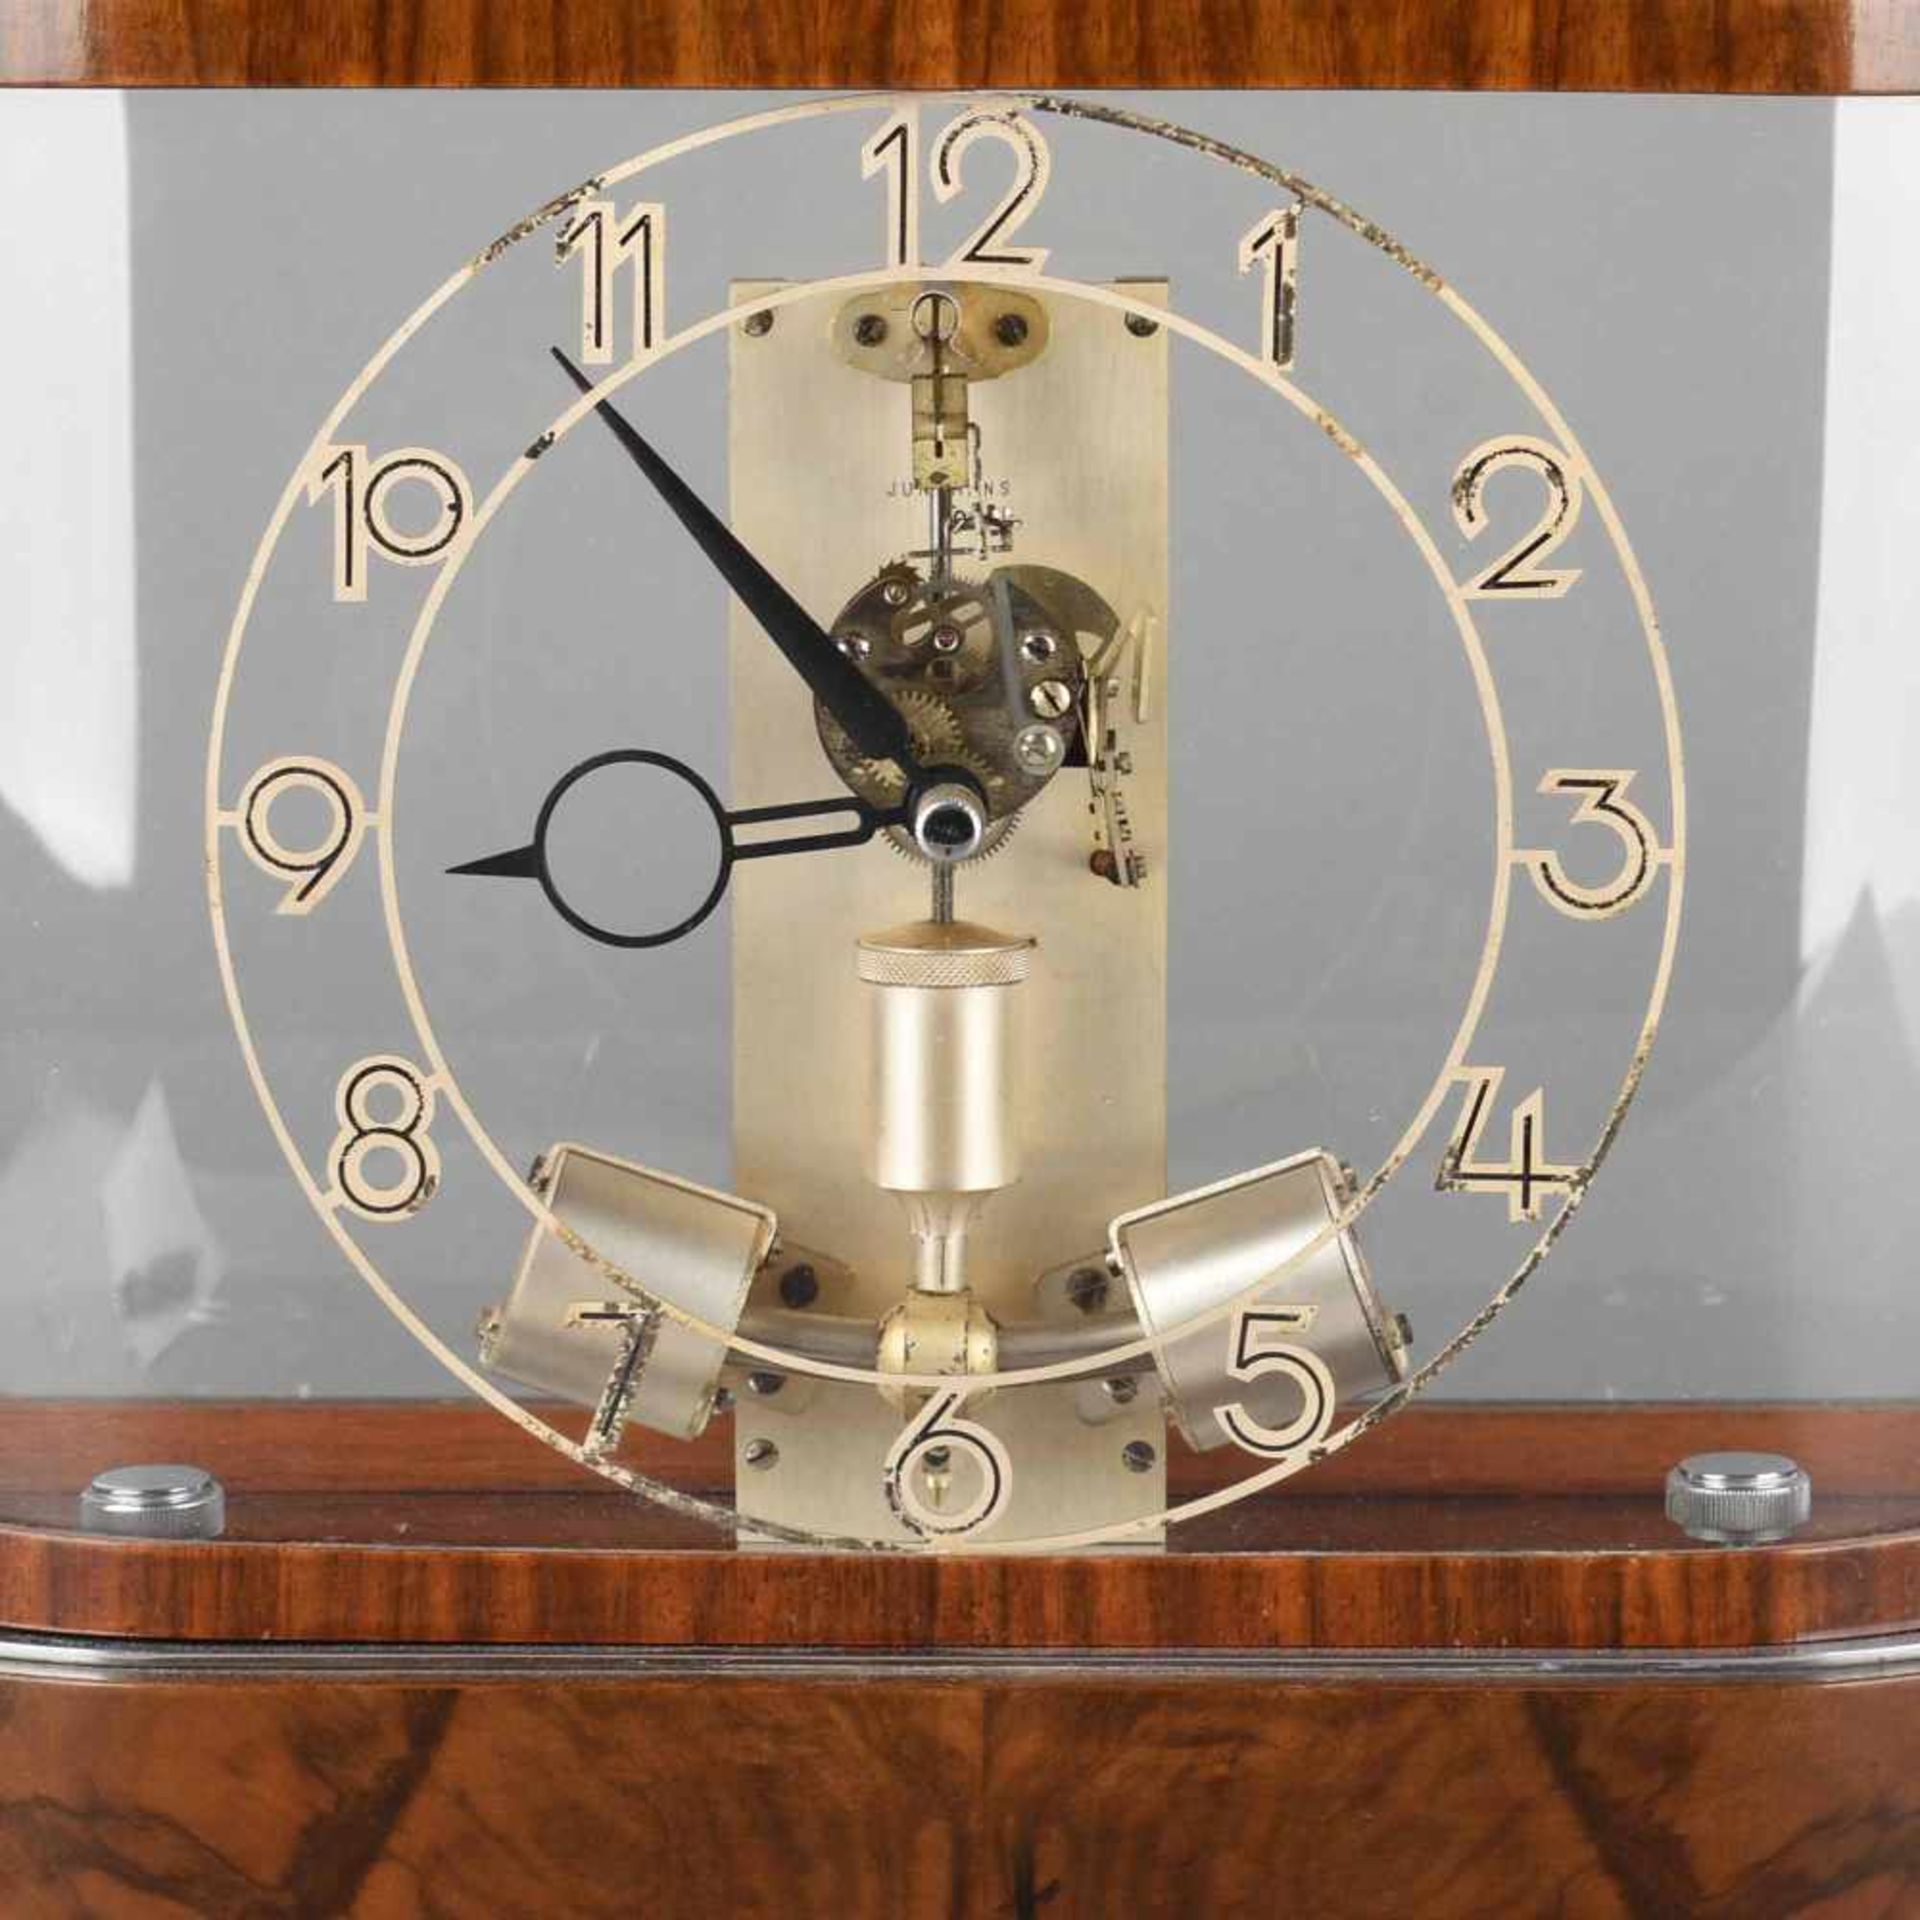 Präzisions-Uhr Hersteller: Junghans, Modell ATO, auf Holzsockel mit verspiegeltem Boden, rundum